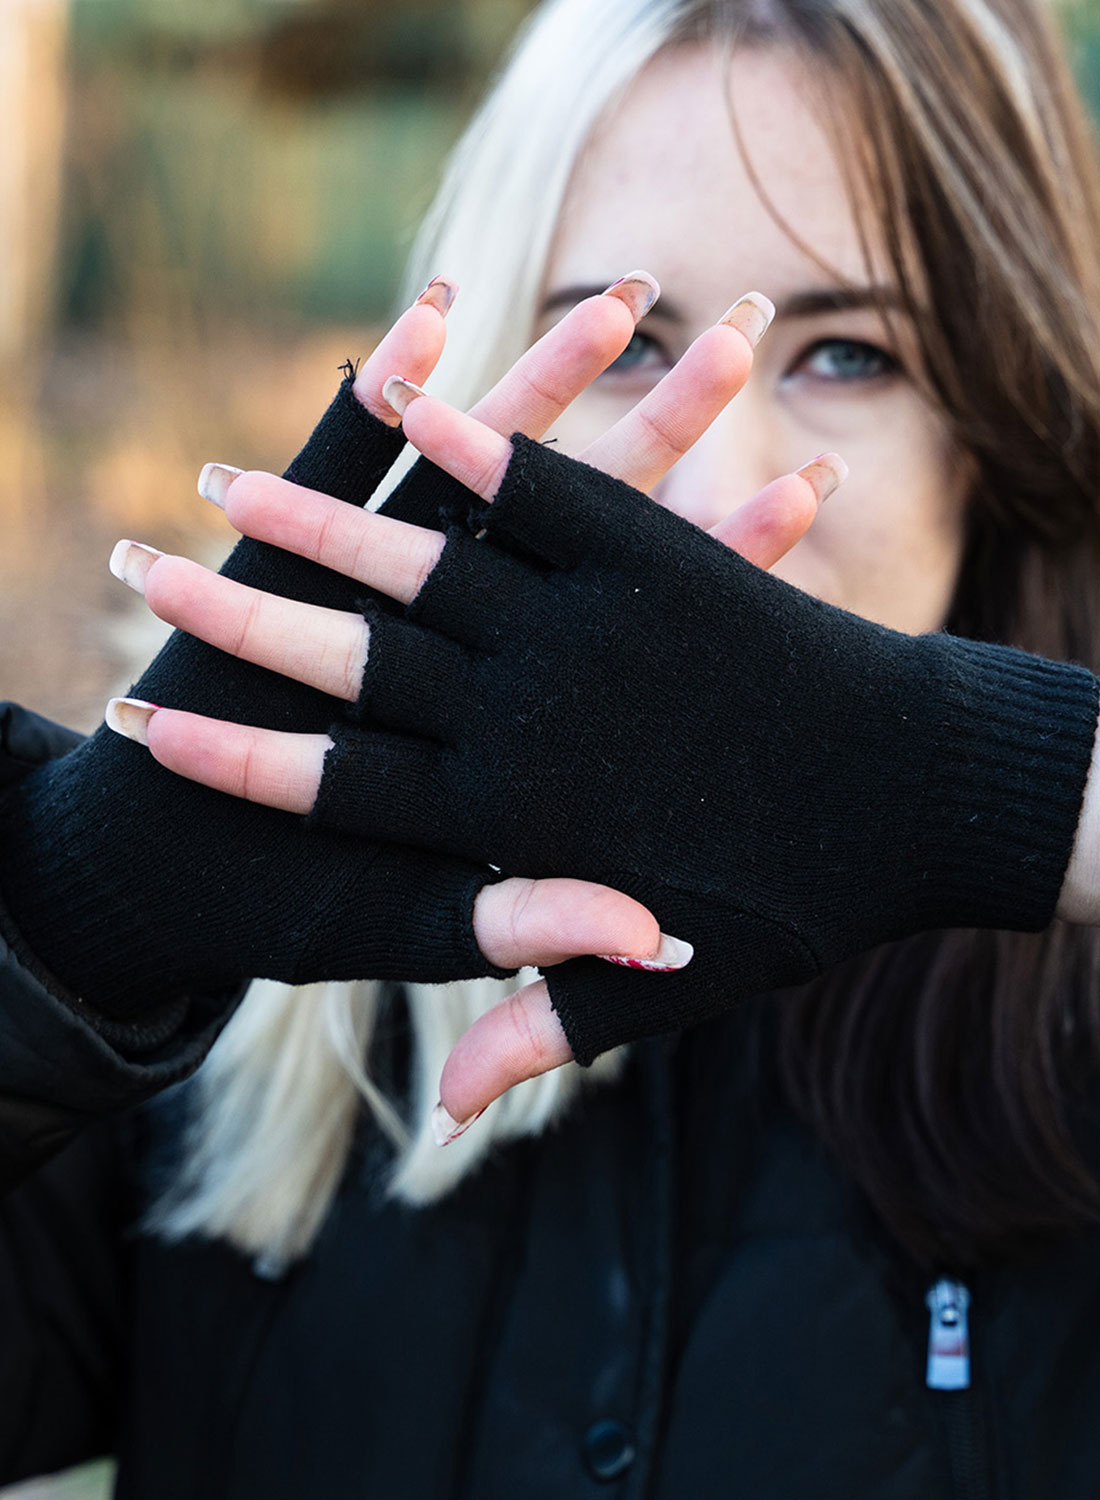 Fingerless Gloves Black